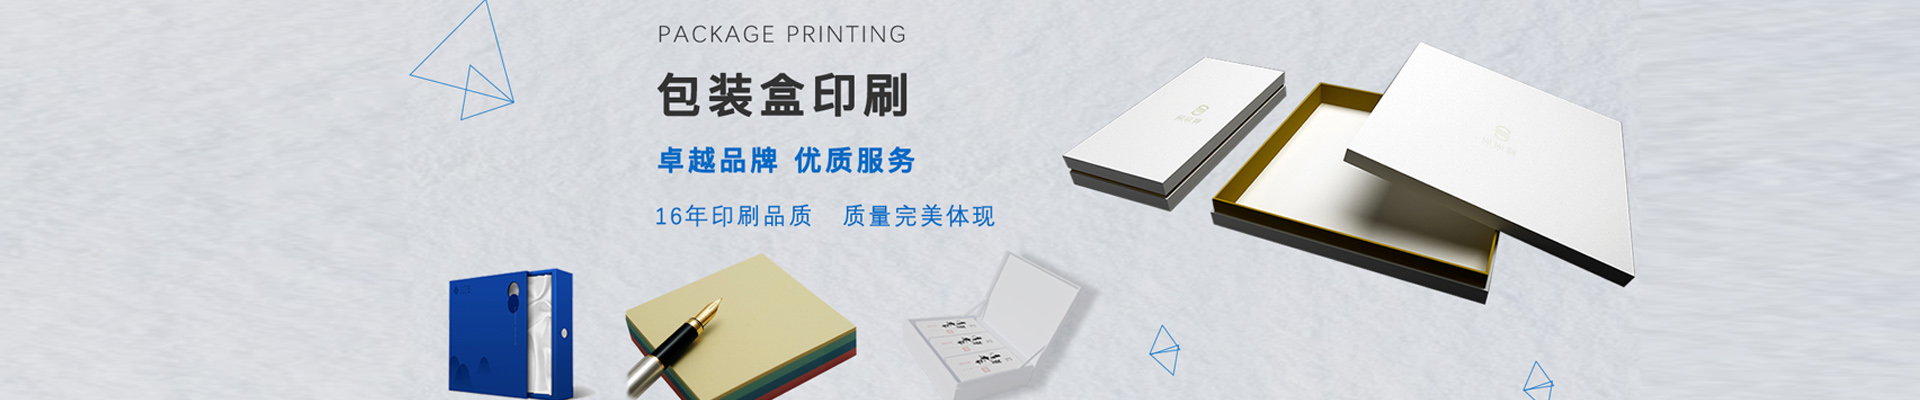 北京东城区印刷厂电话 北京众和兴盛印刷设计有限公司